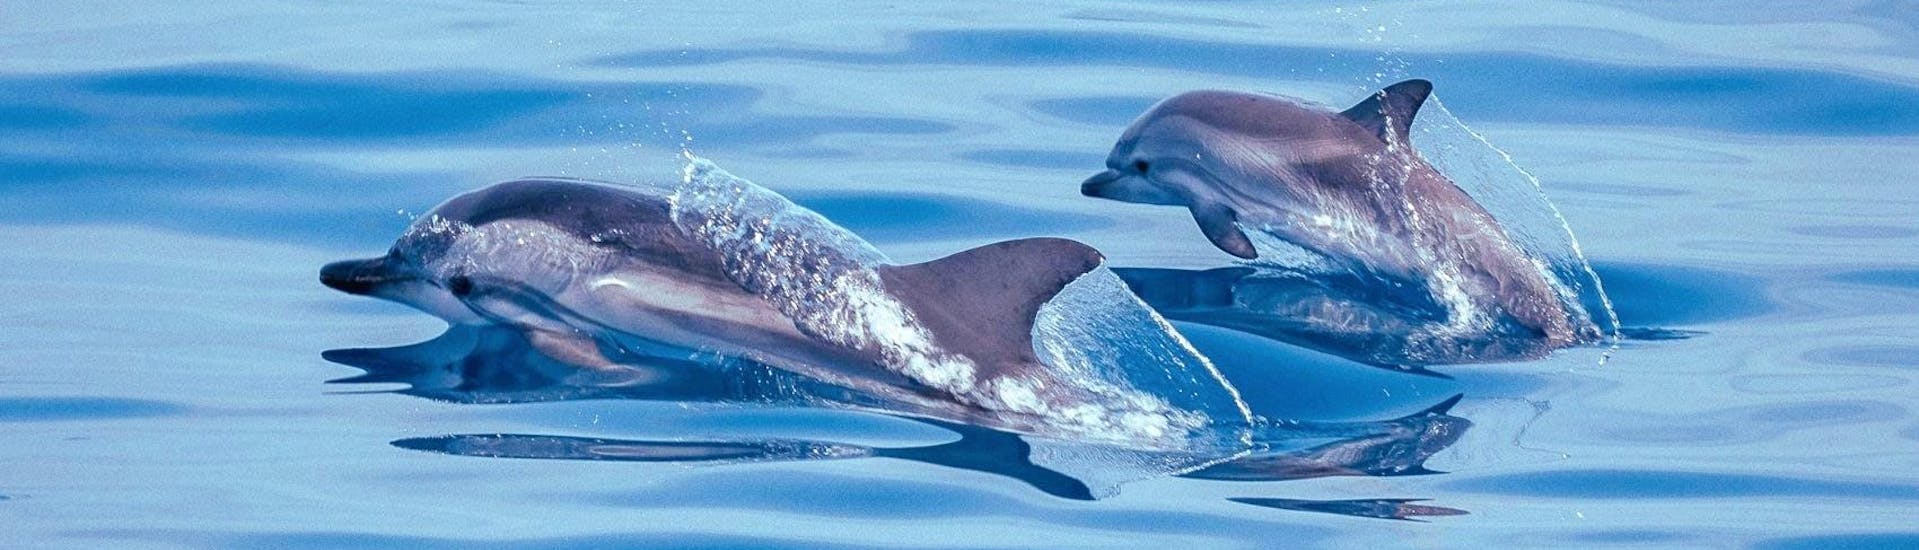 i delfini che potrai vedere durante la Gita in barca ad Antibes con snorkeling e avvistamento delfini con BeFree2Dive Villeneuve-Loubet.